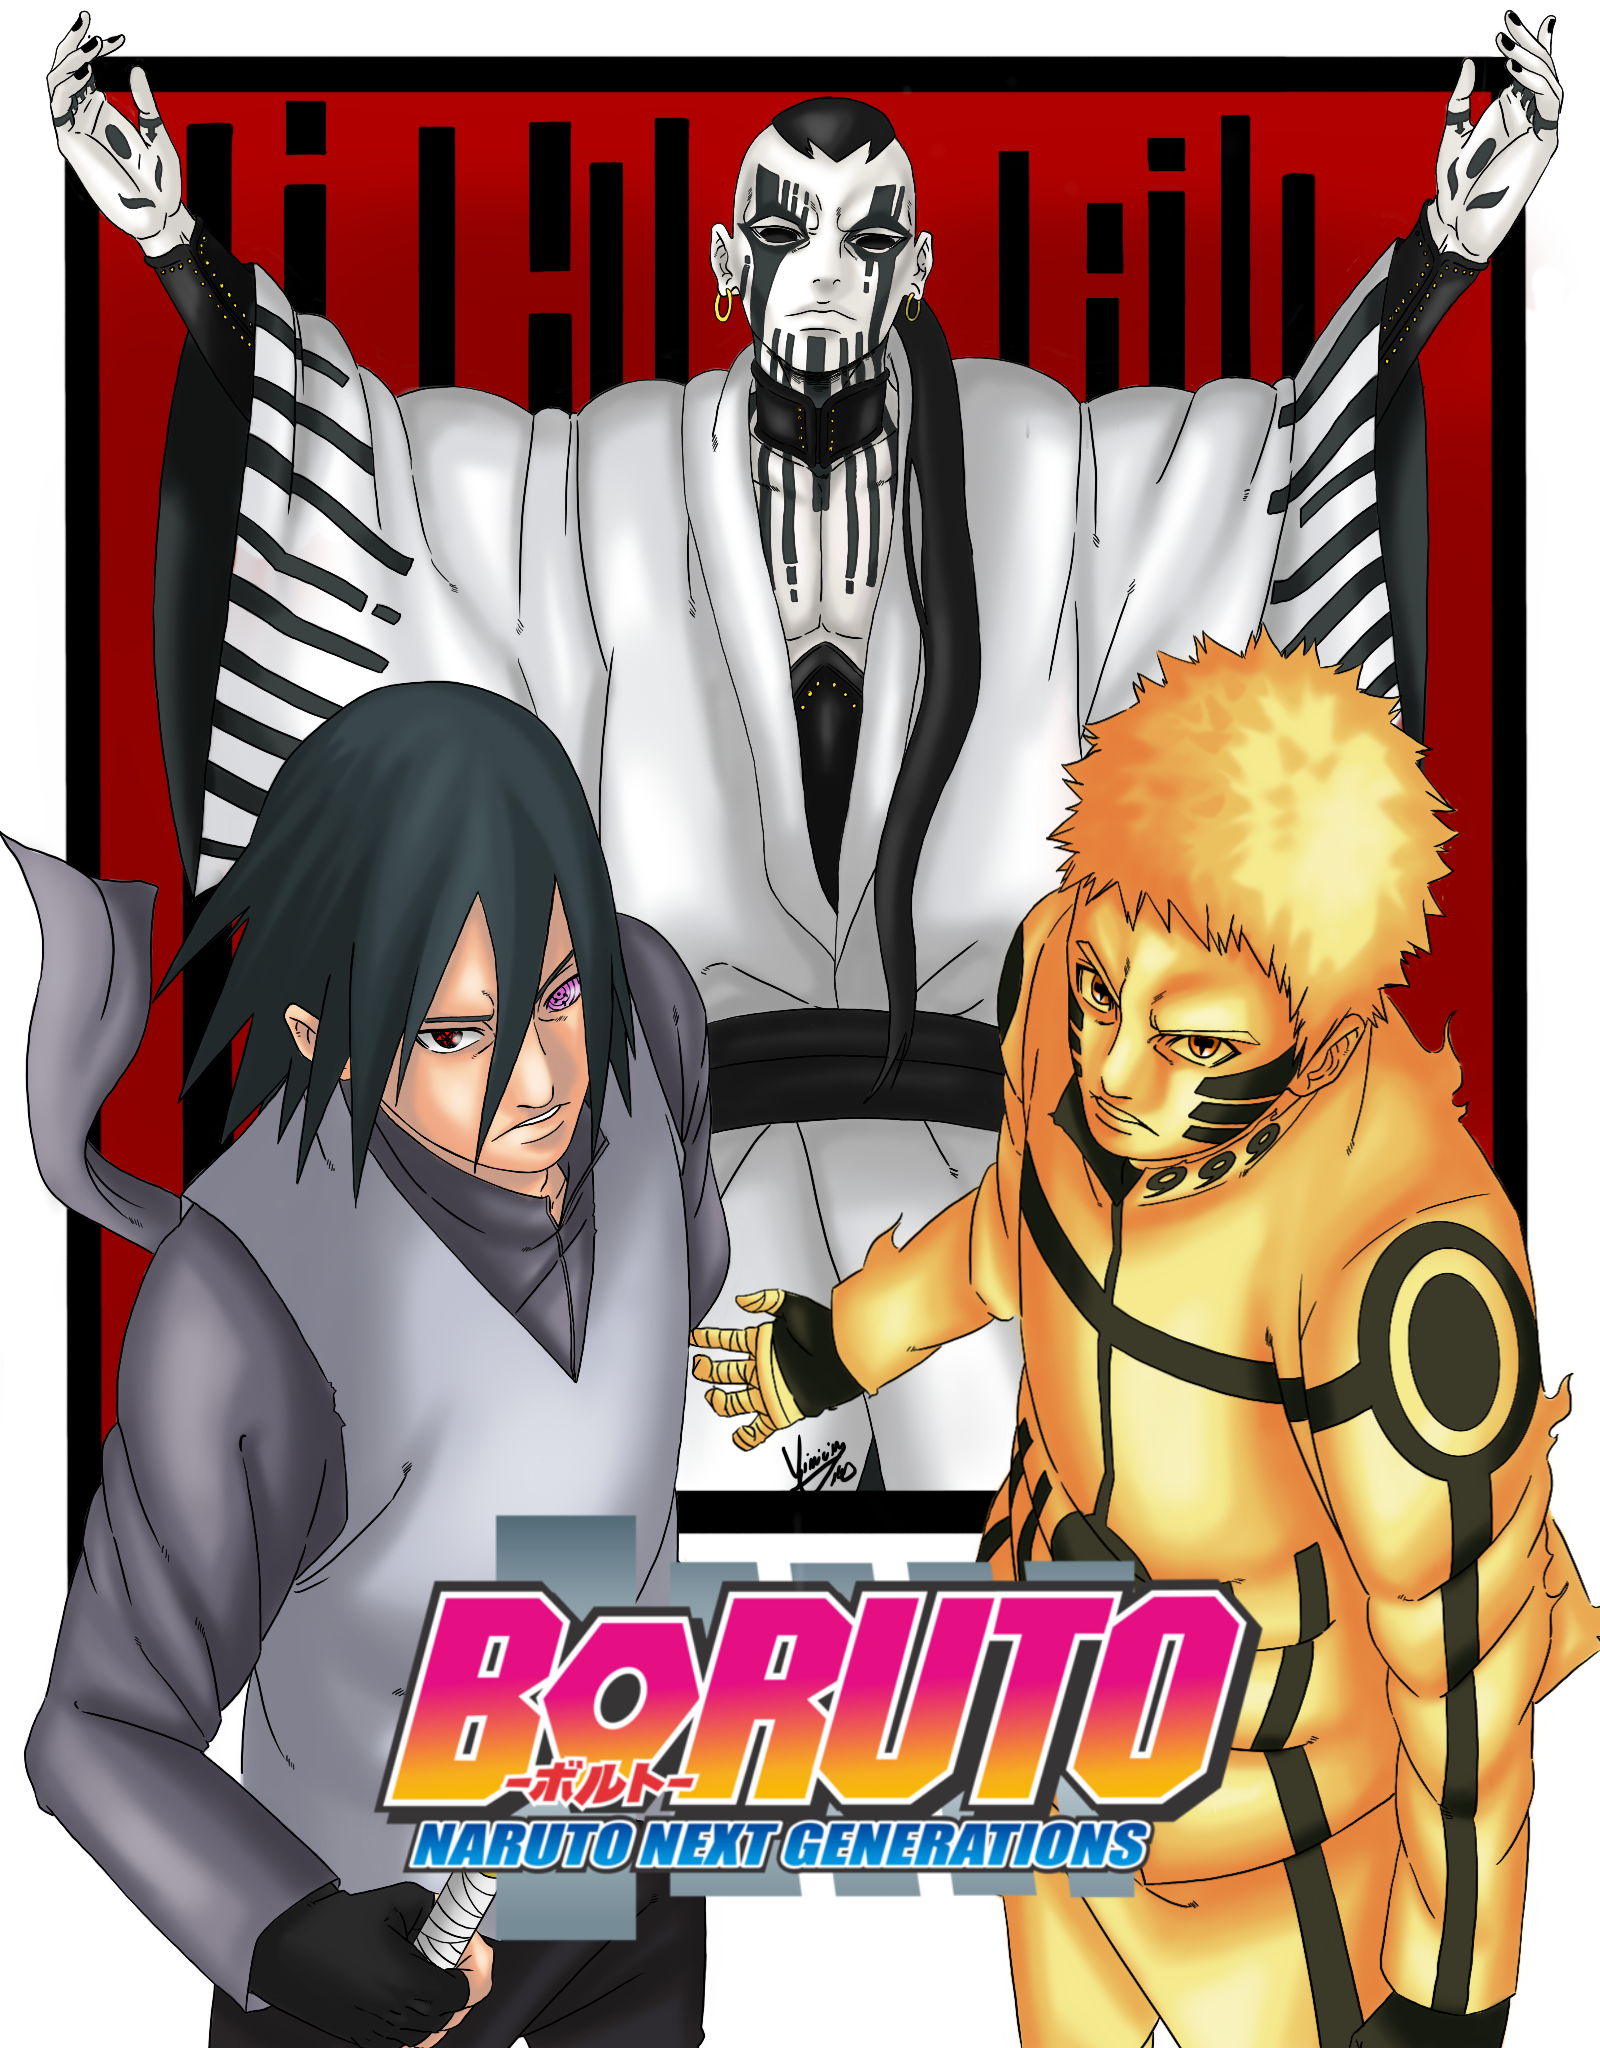 Naruto and Sasuke vs jigen, cover mangá style.I imagine that